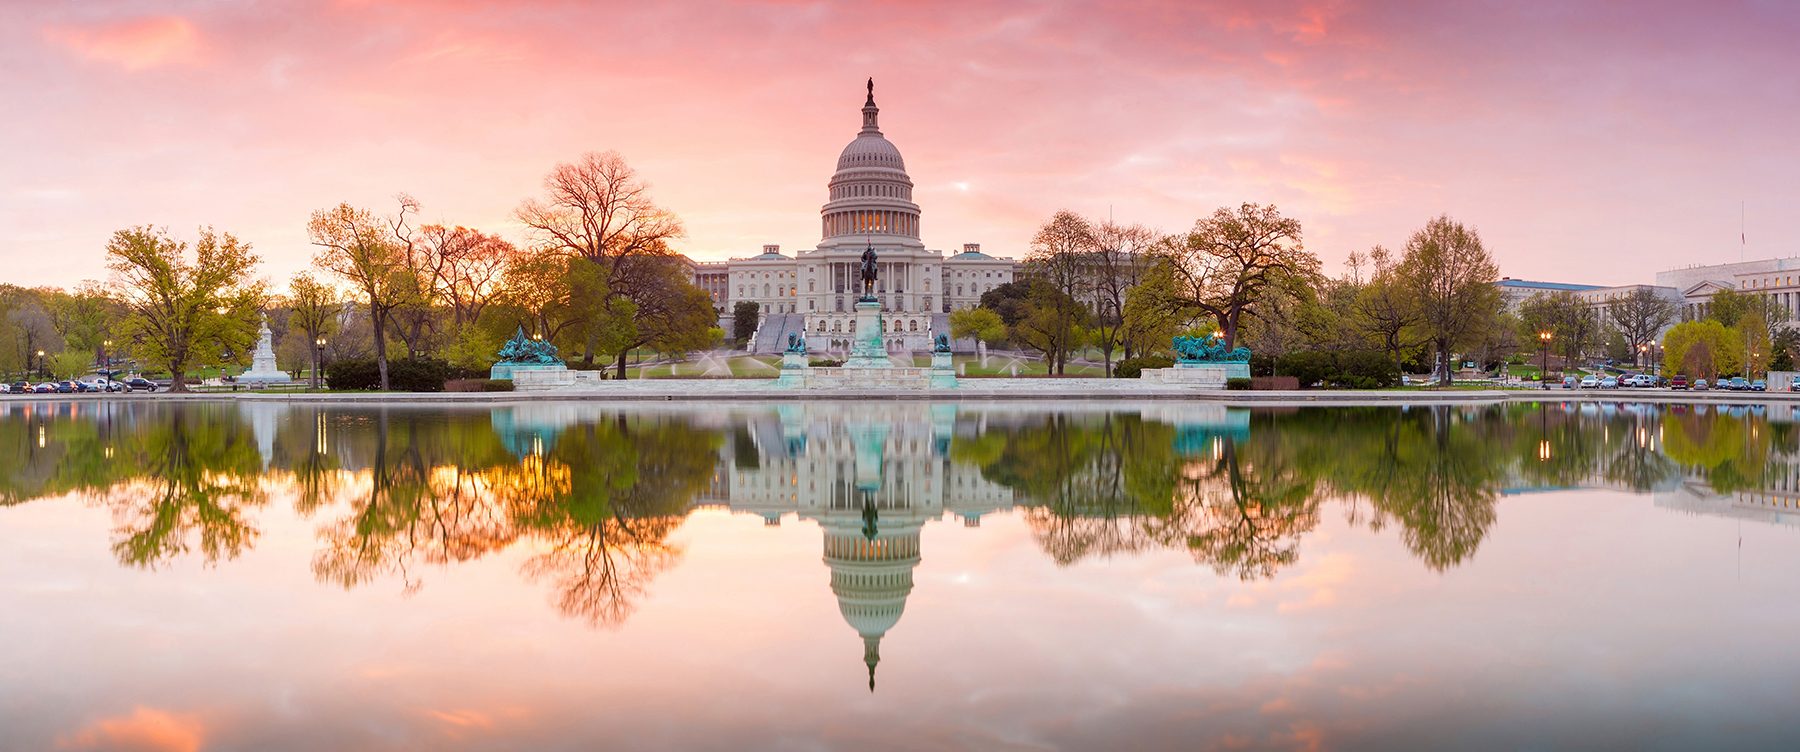 Washington DC sunrise pic